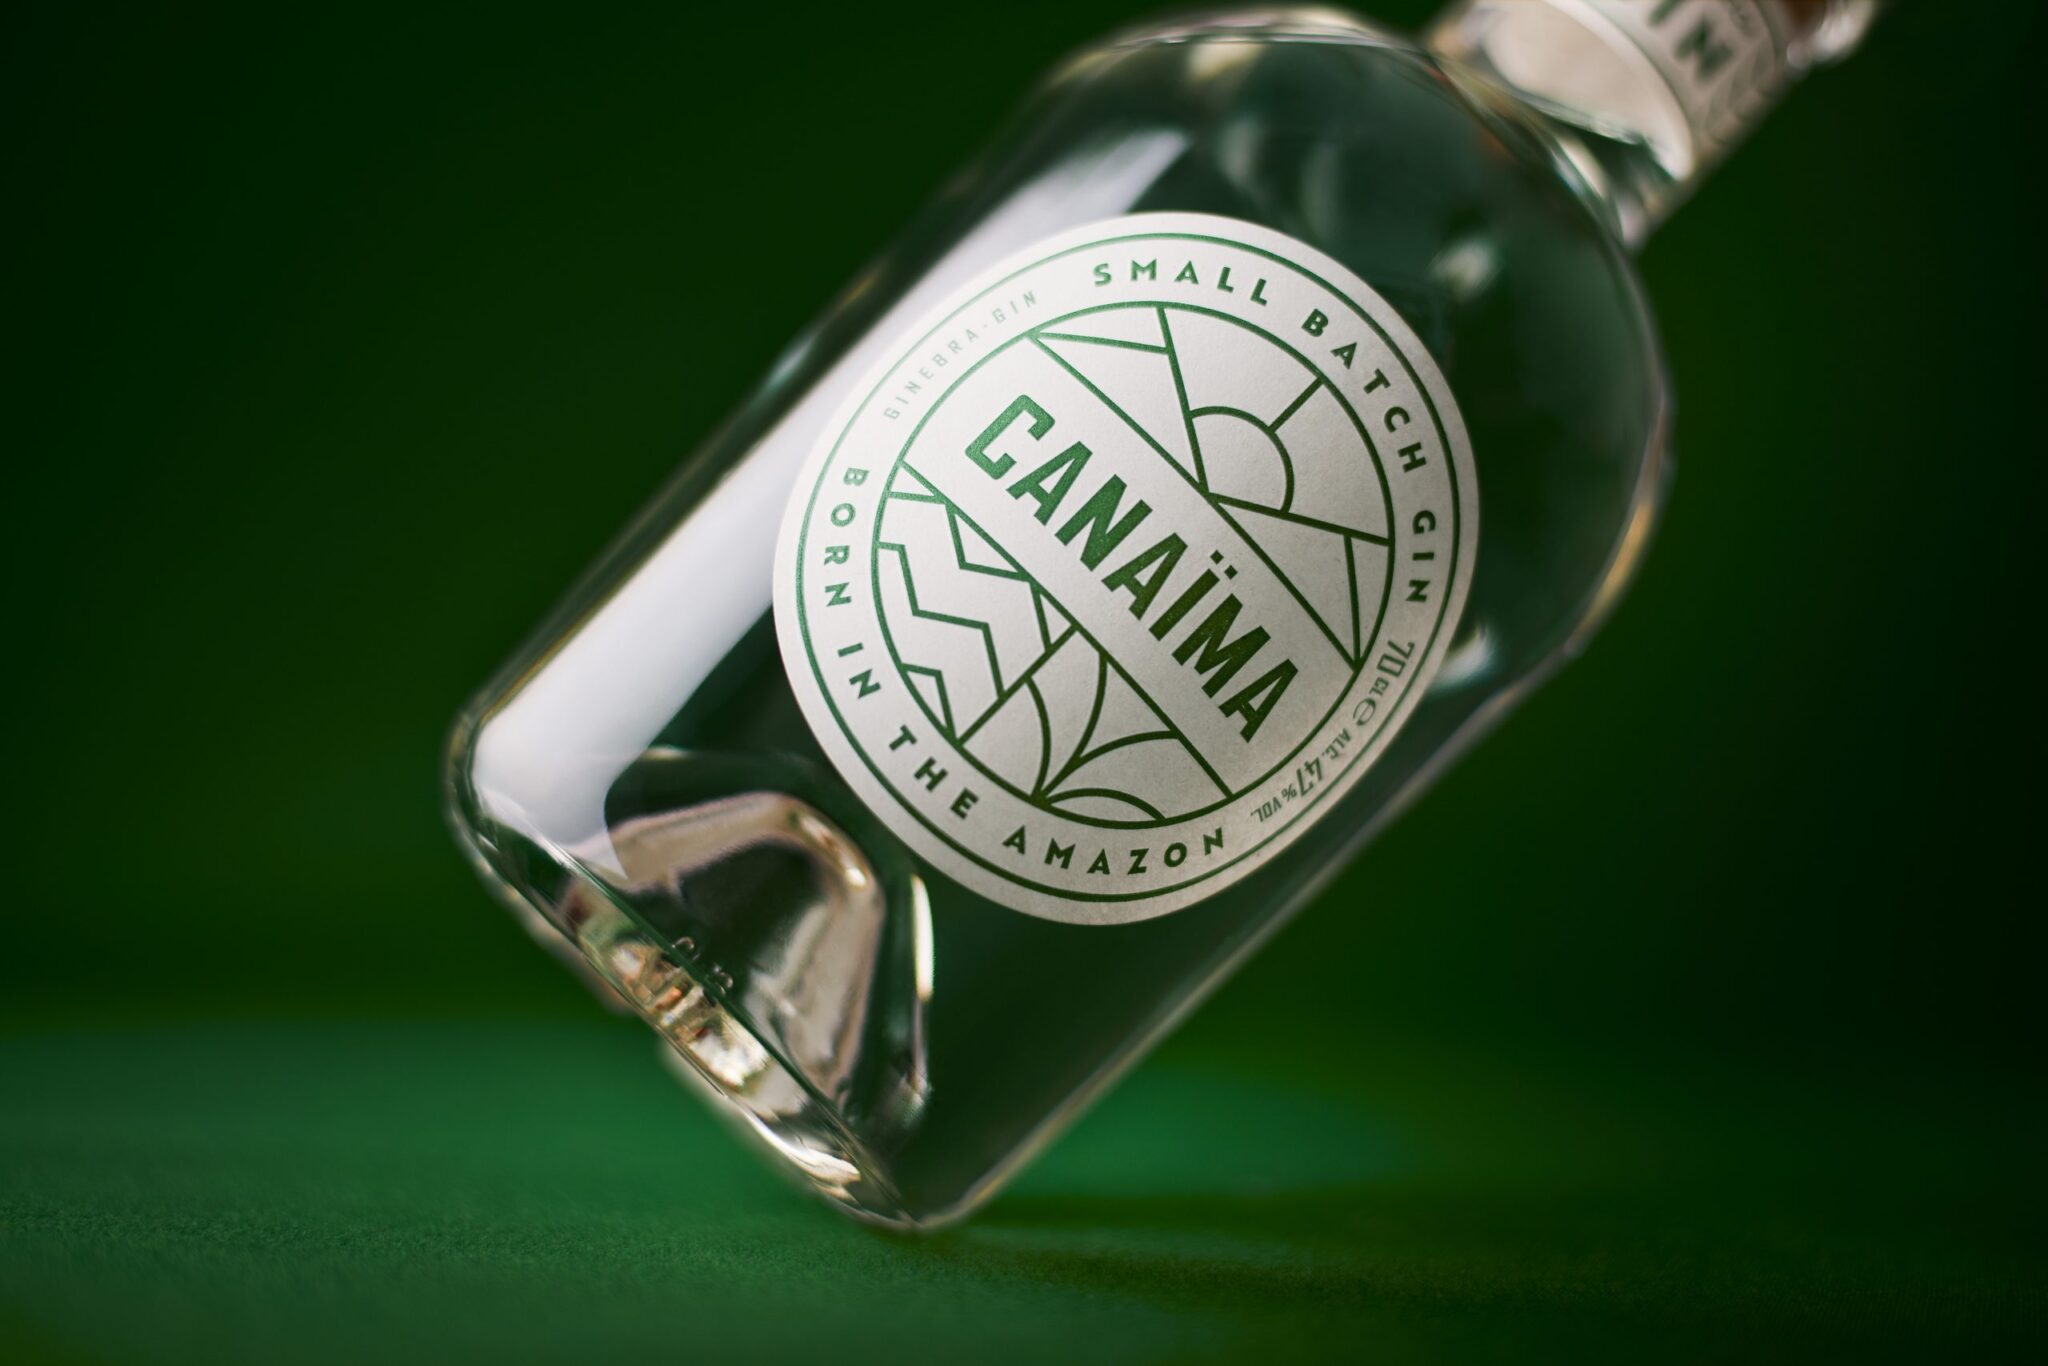 Canaïma Gin